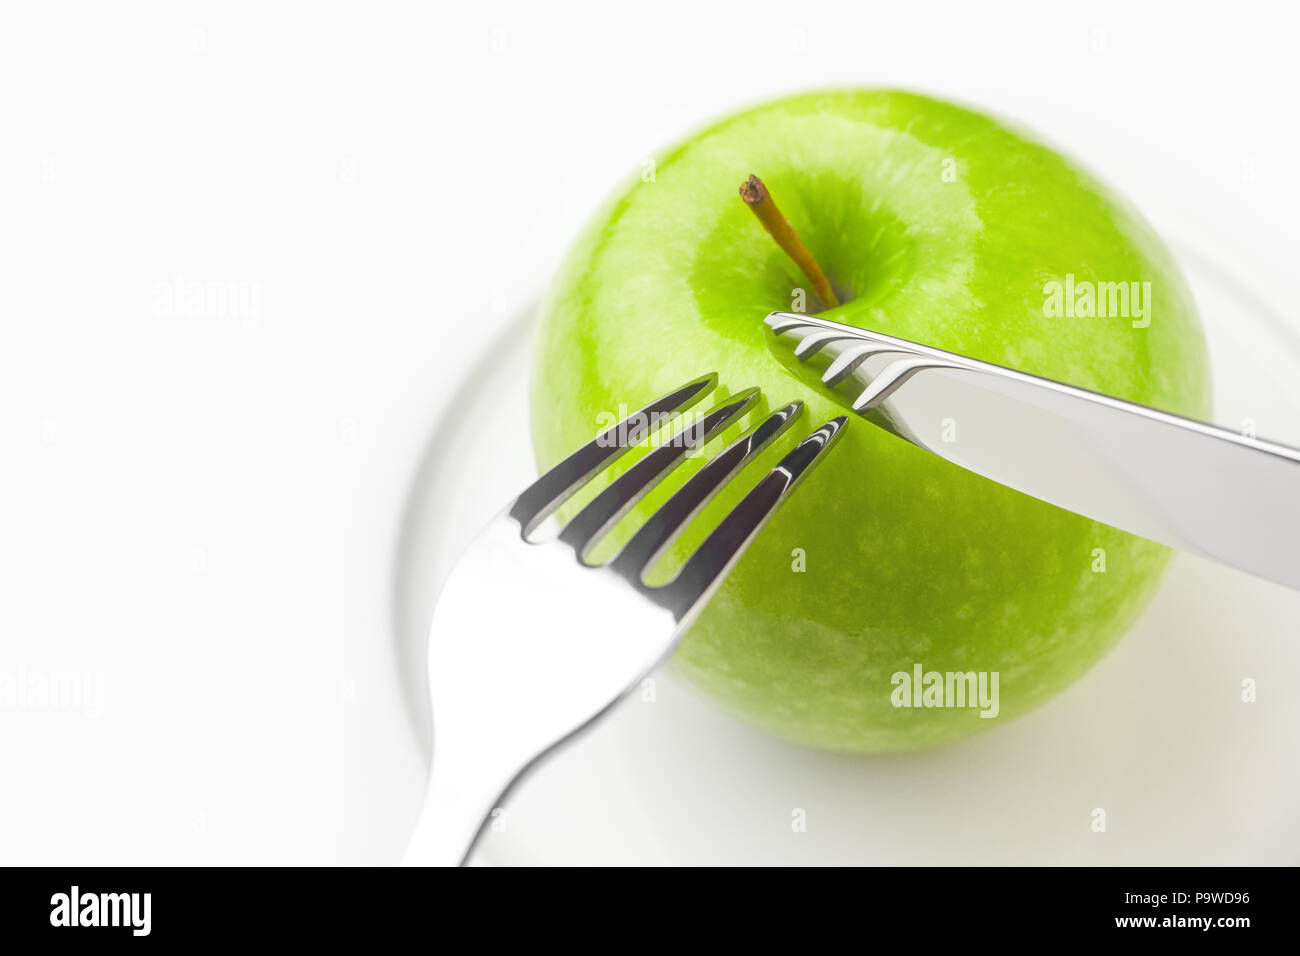 Diät Konzept, grüner Apfel auf einem weissen Teller, Gabel, Messer, Frau c Stockfoto